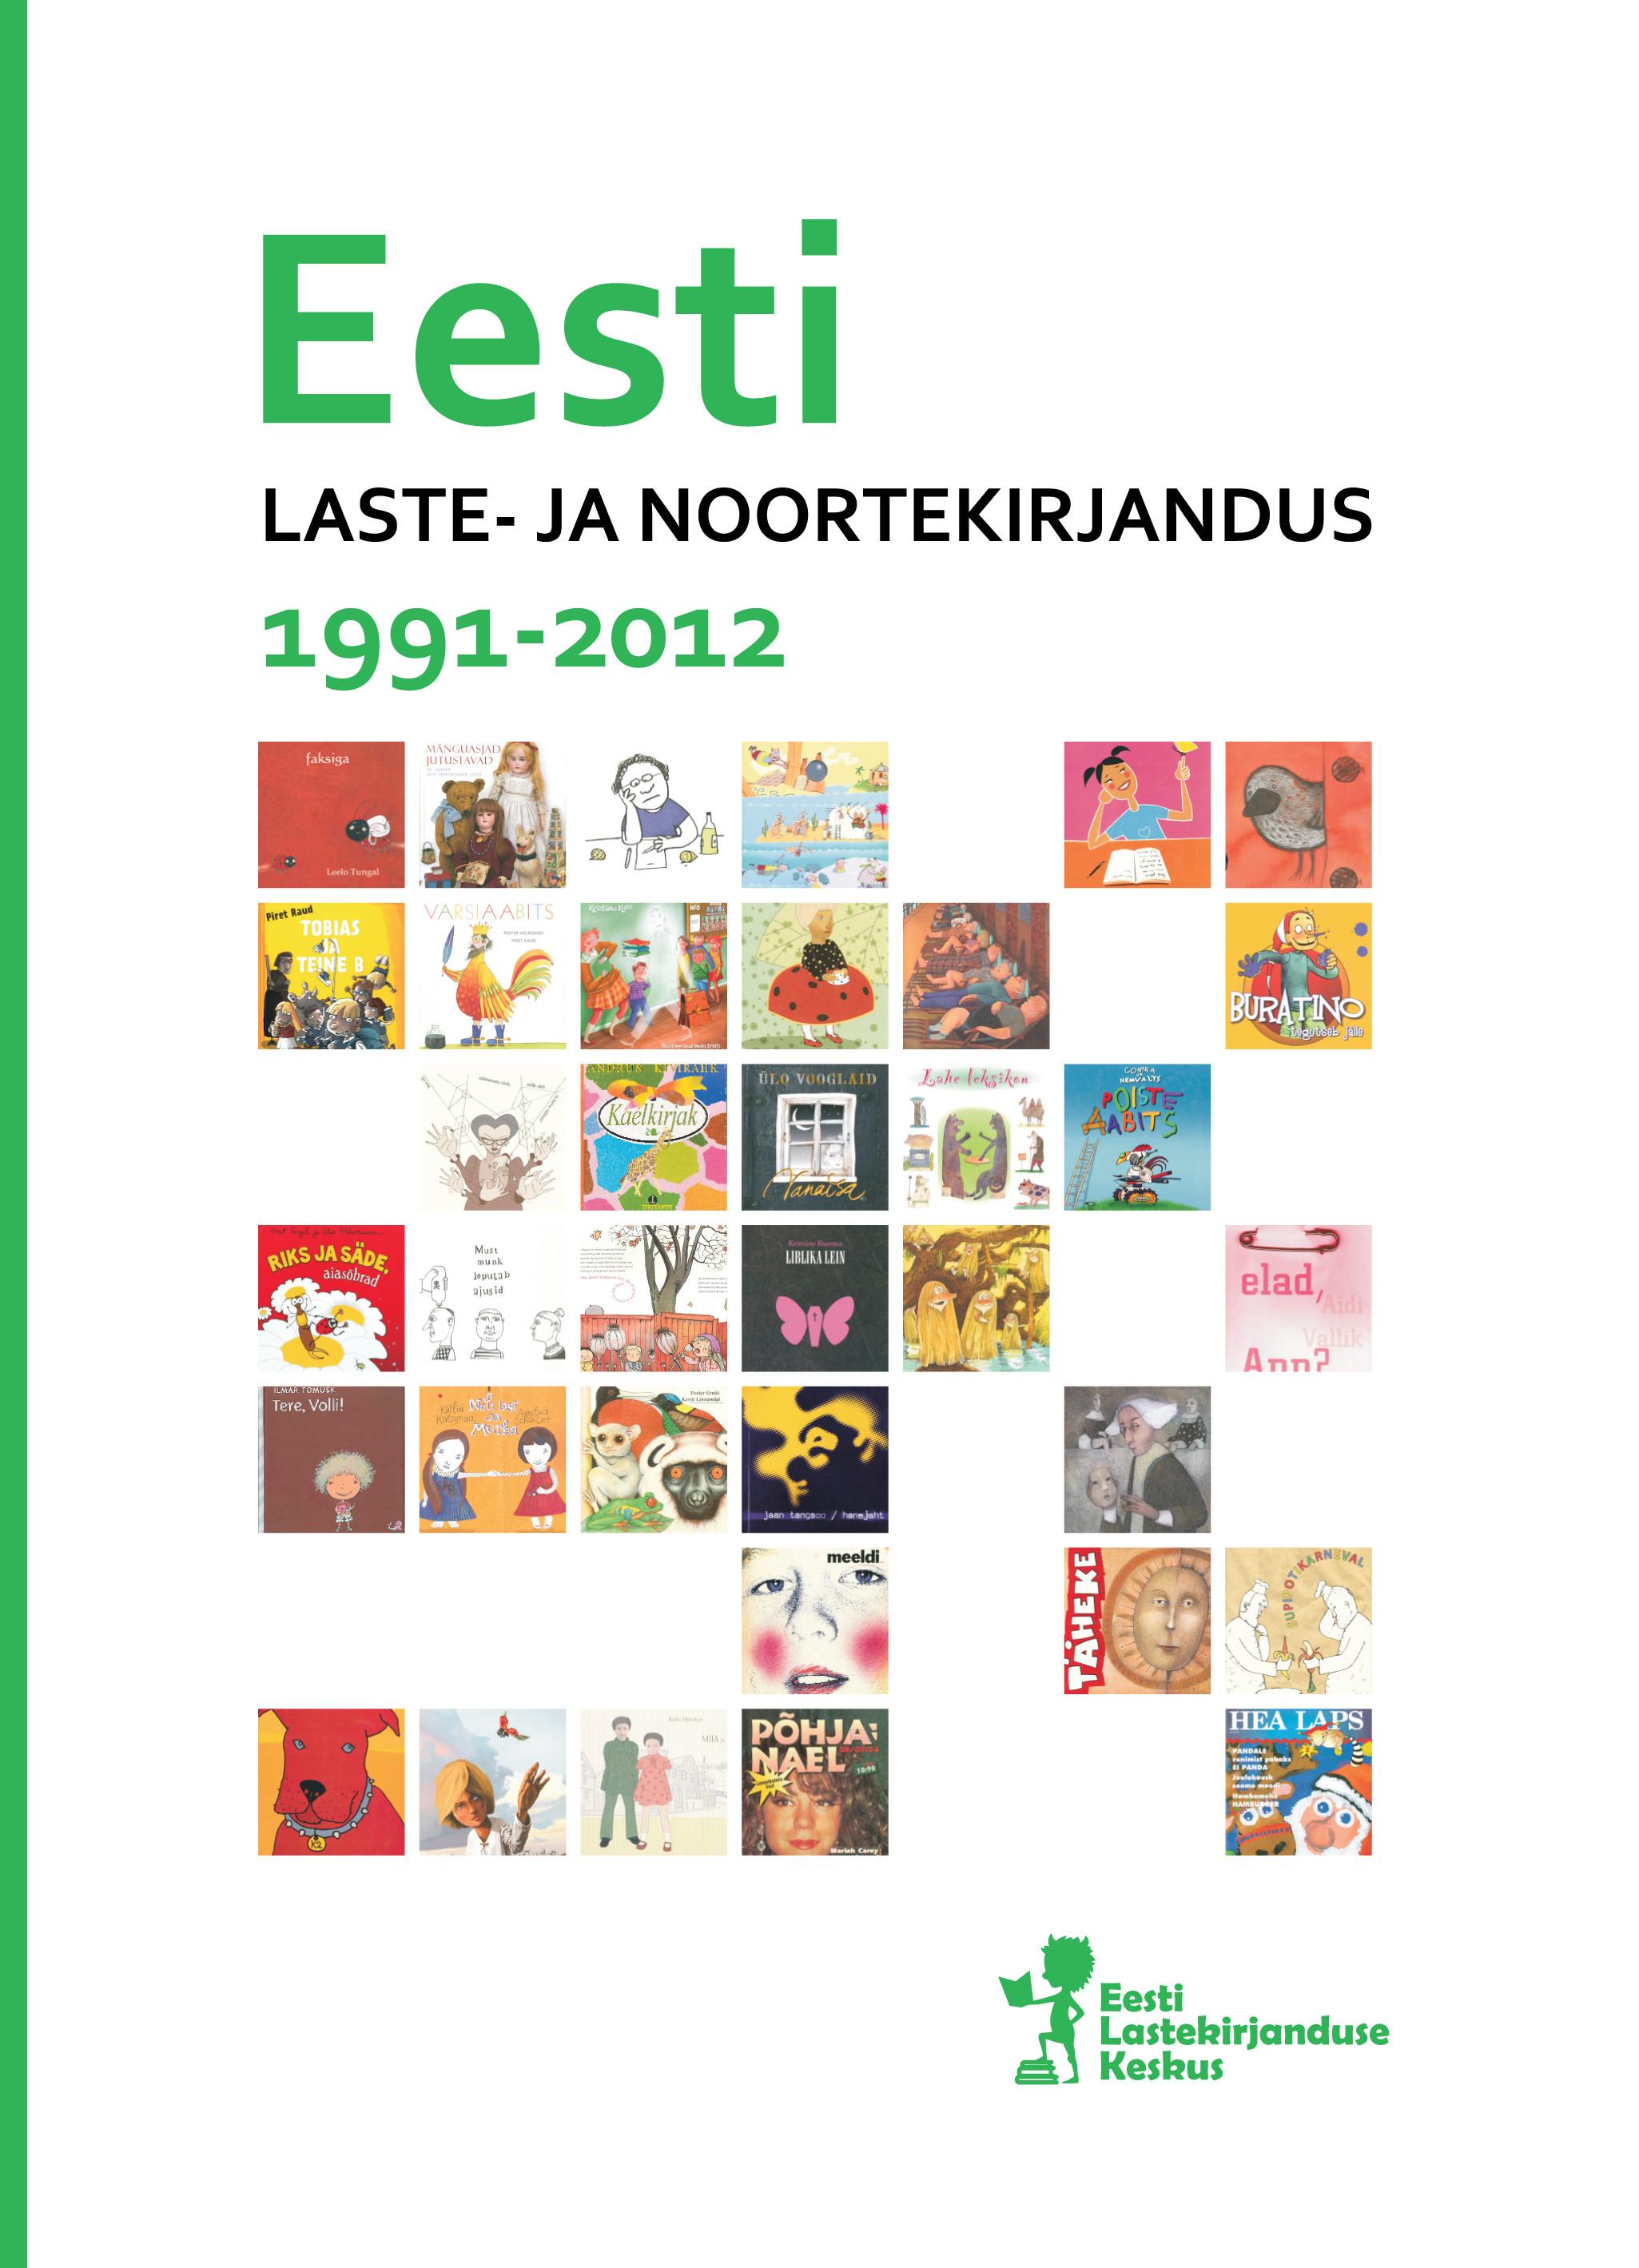 EESTI LASTE- JA NOORTEKIRJANDUS 1991 - 2012